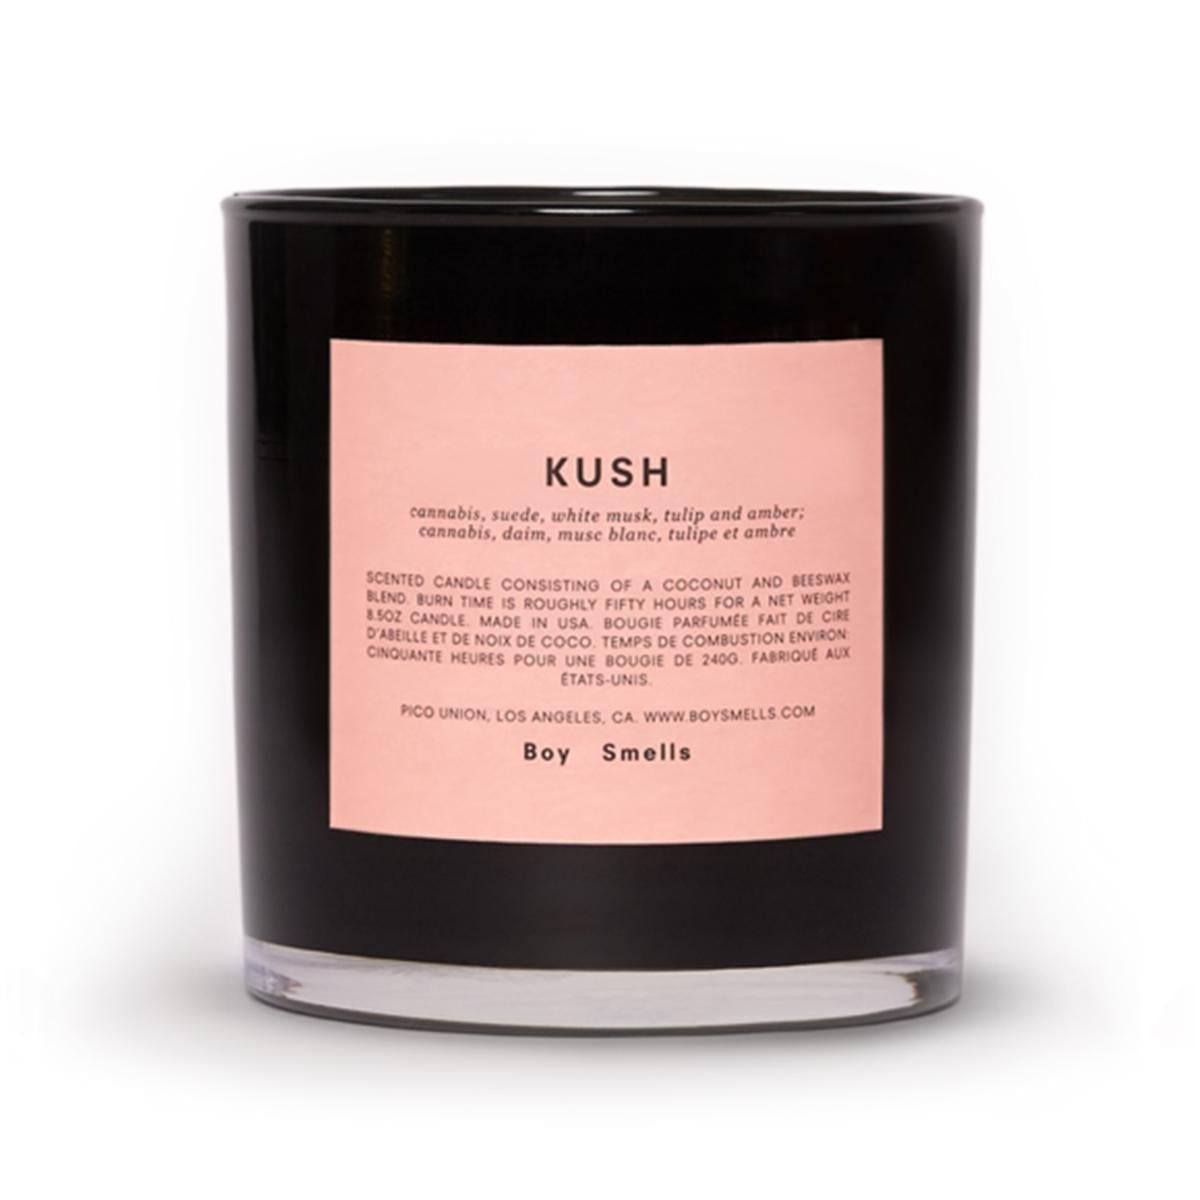 Primary image of Kush Candle